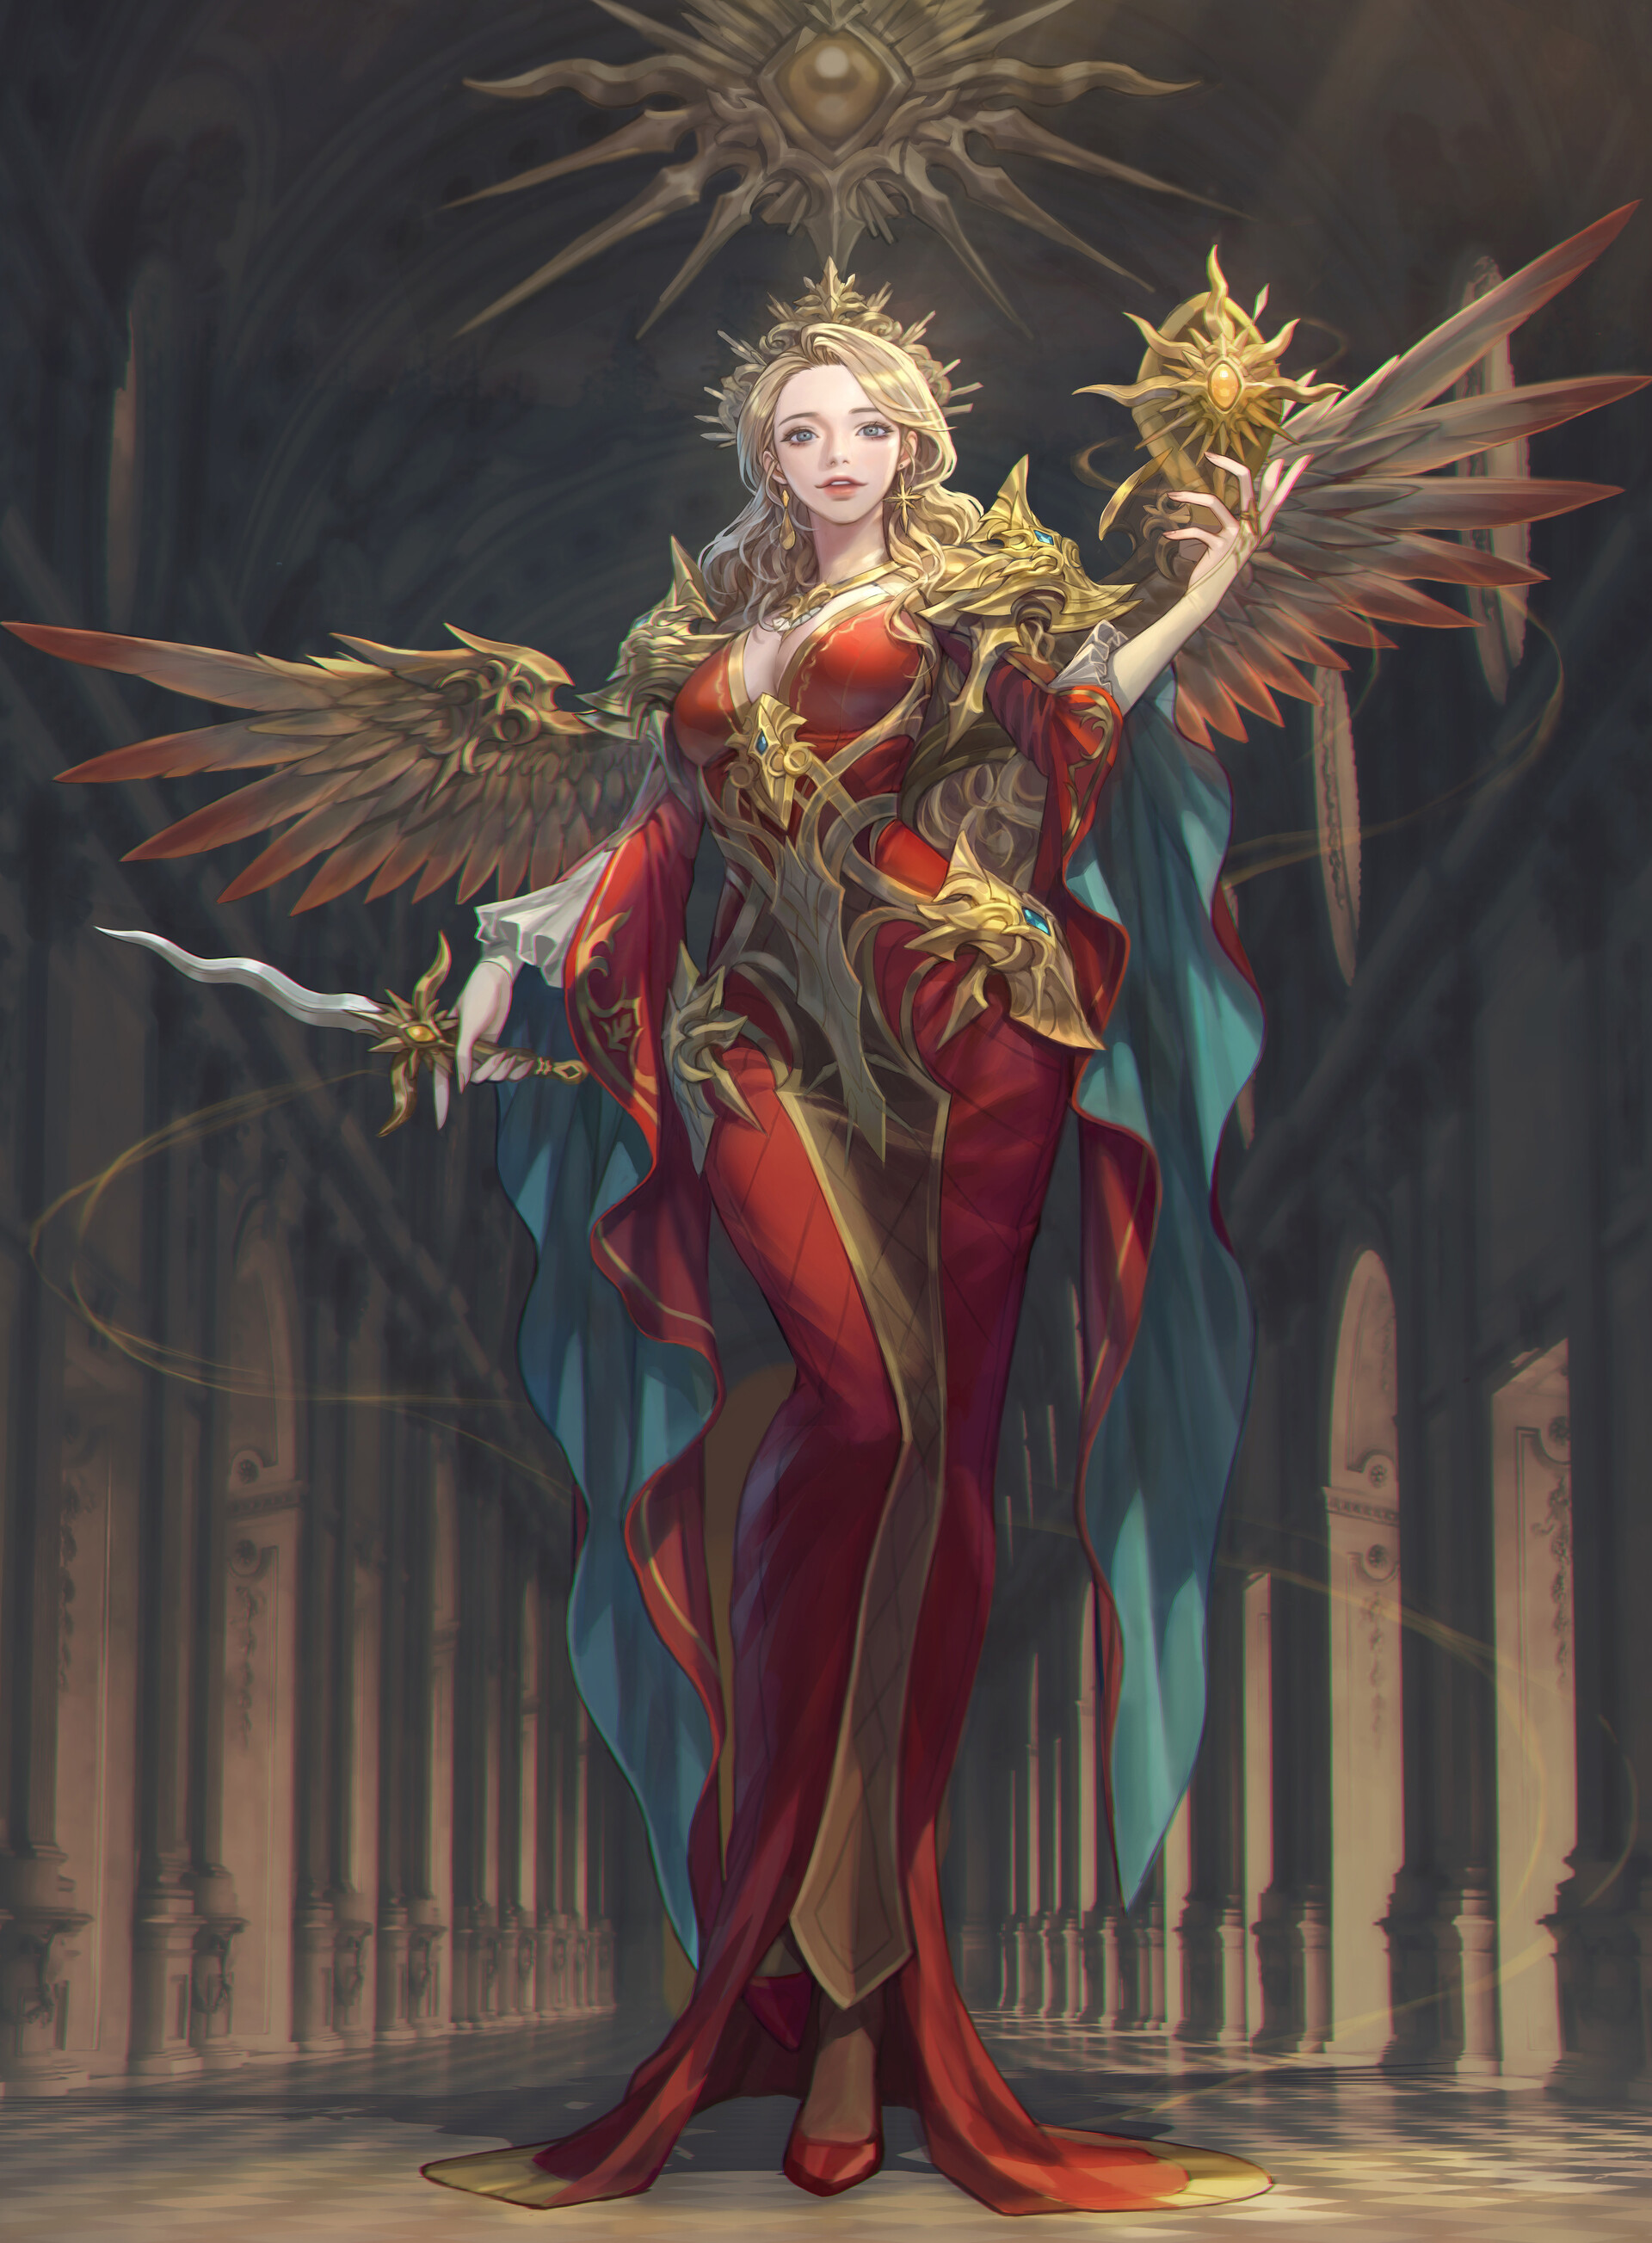 General 1920x2607 artwork ArtStation women fantasy art fantasy girl blonde dress red dress standing wings dagger